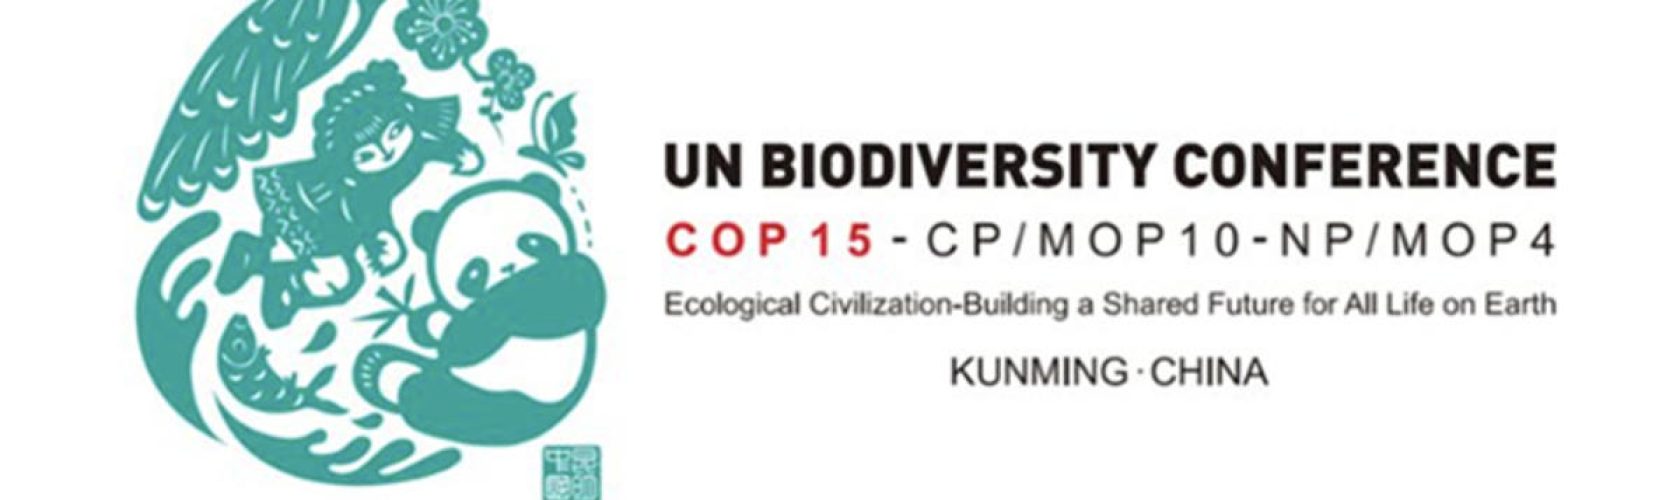 KUNMING COP 15 visuel